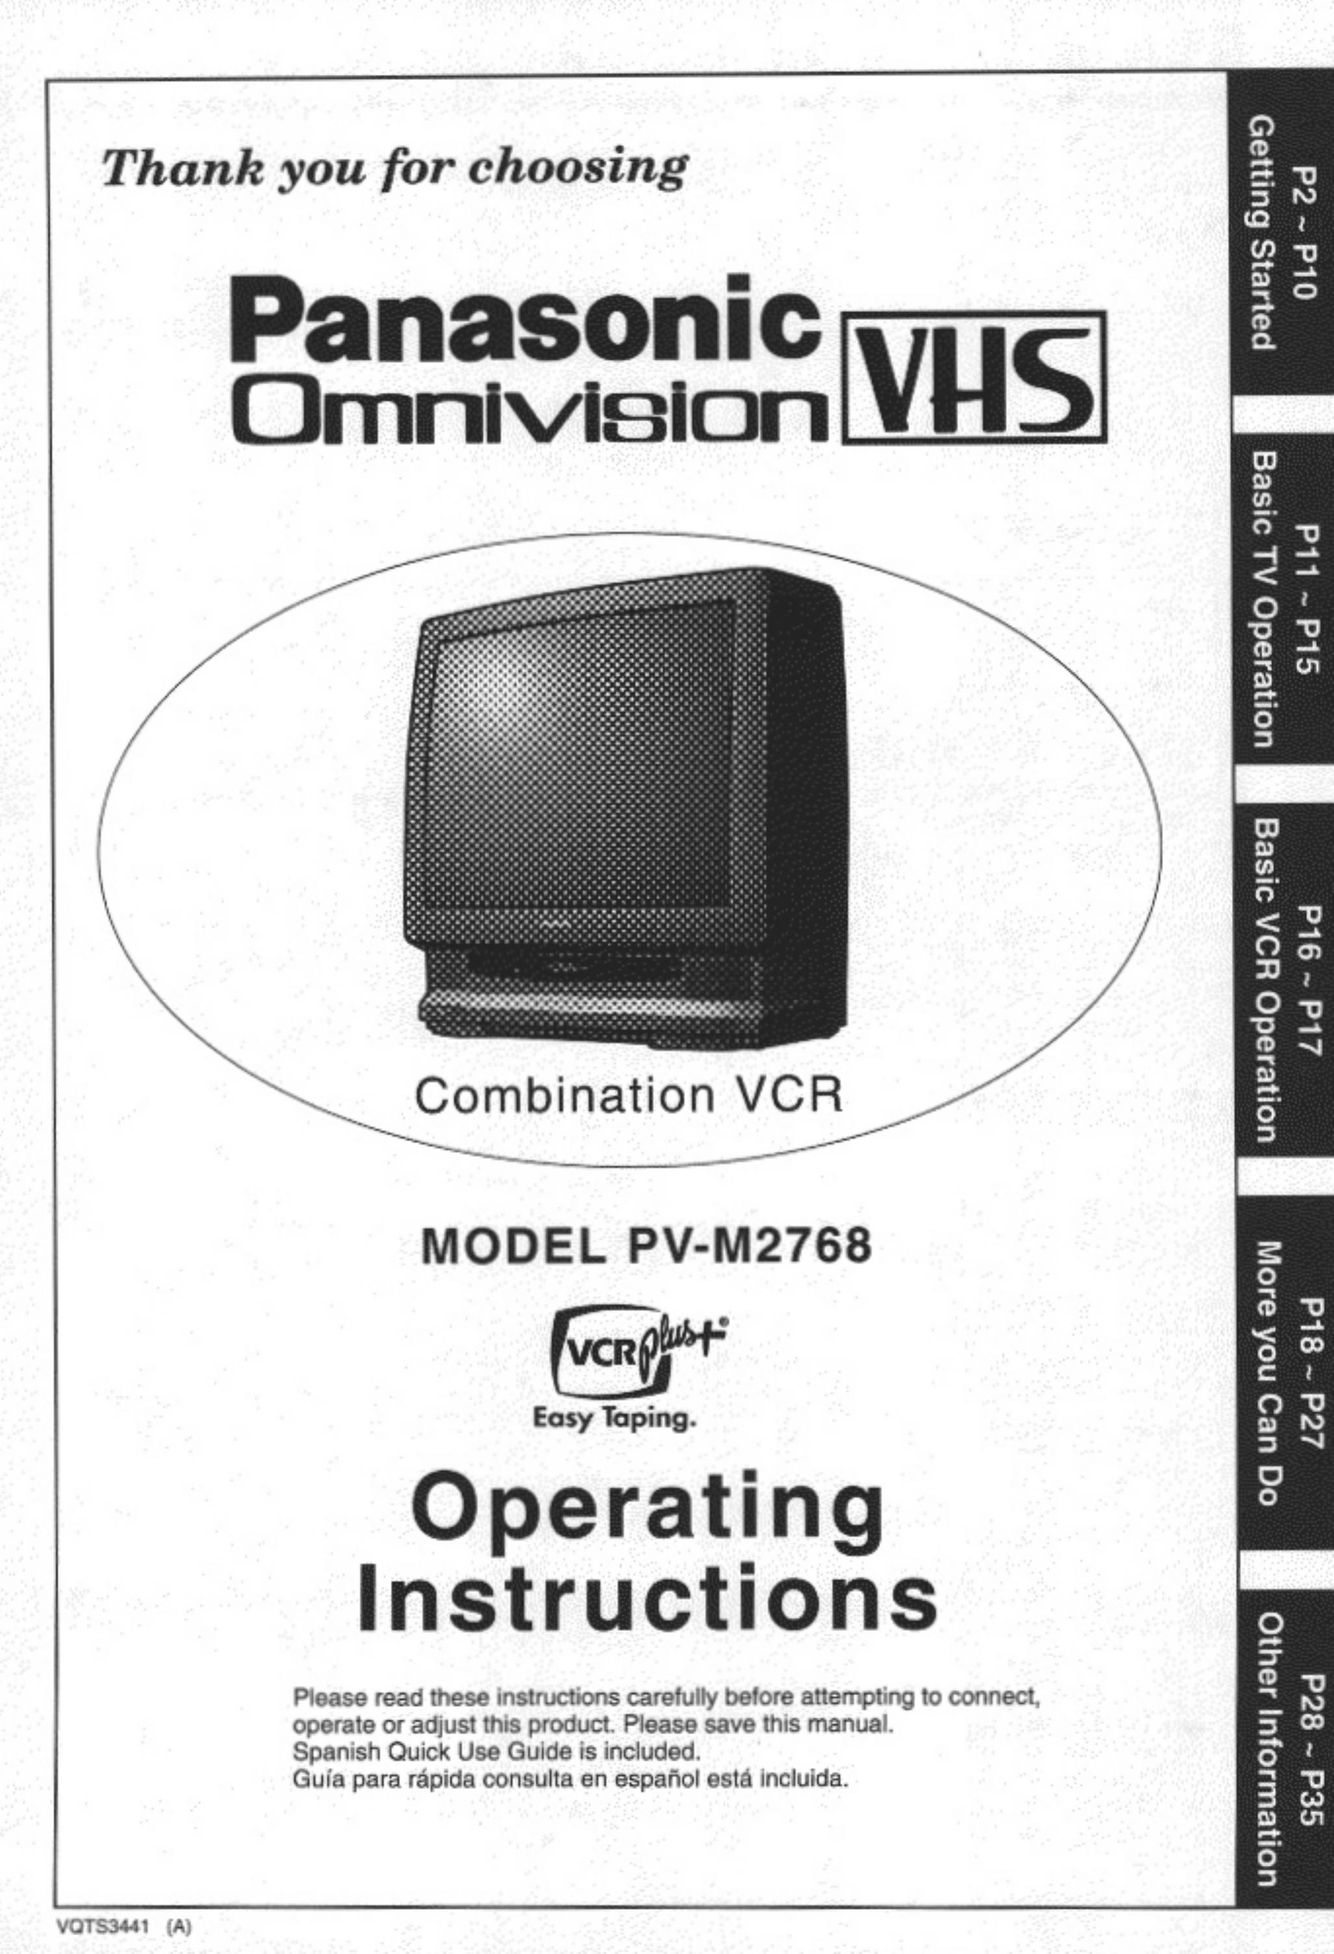 Panasonic PV-M2768 TV VCR Combo User Manual